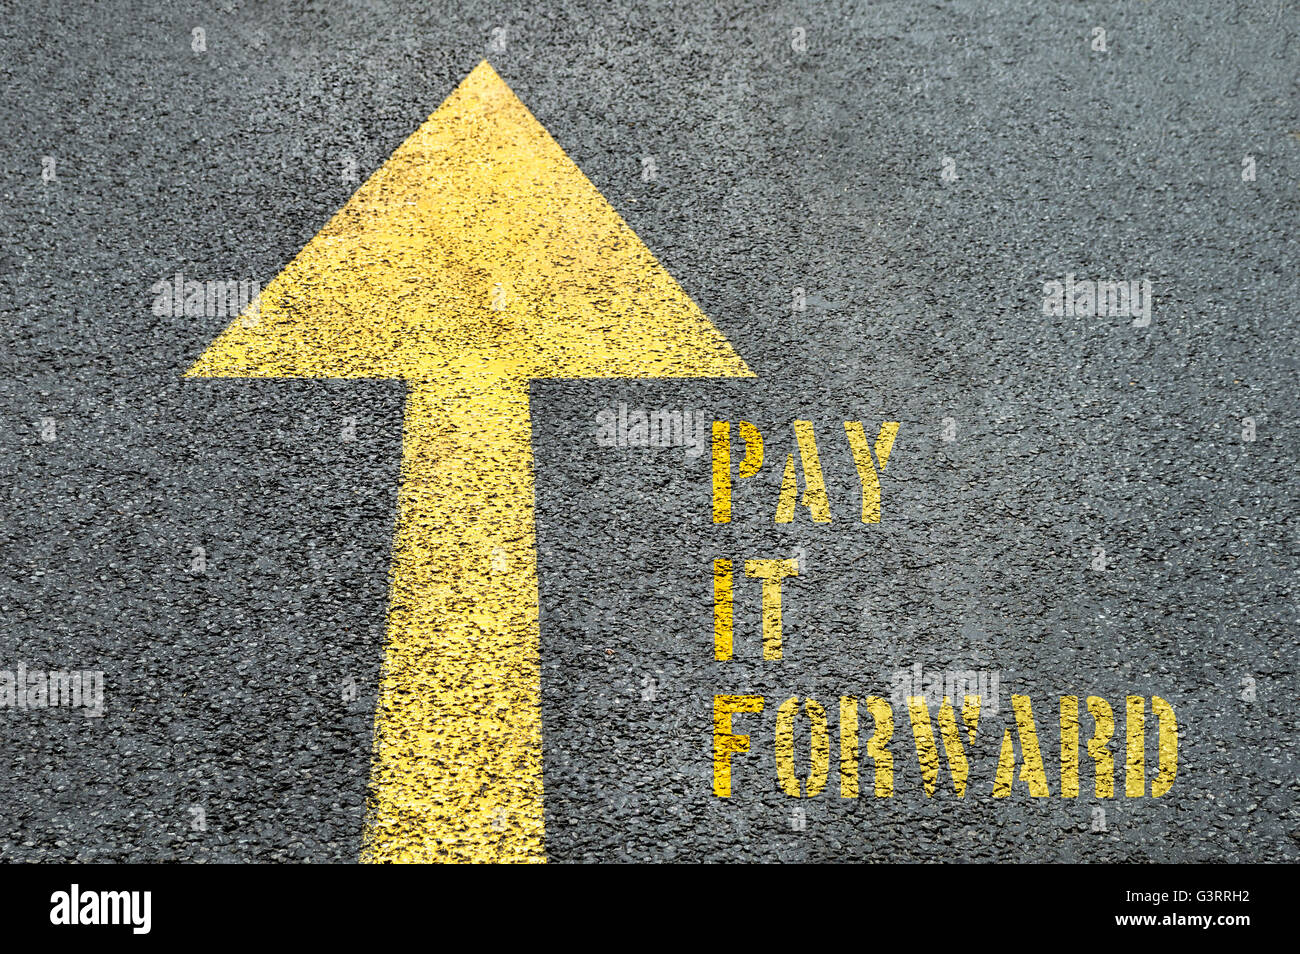 Gelbe vorwärts Straßenschild mit Pay It Forward Wort auf der asphaltierten Straße. Business-Konzept. Stockfoto